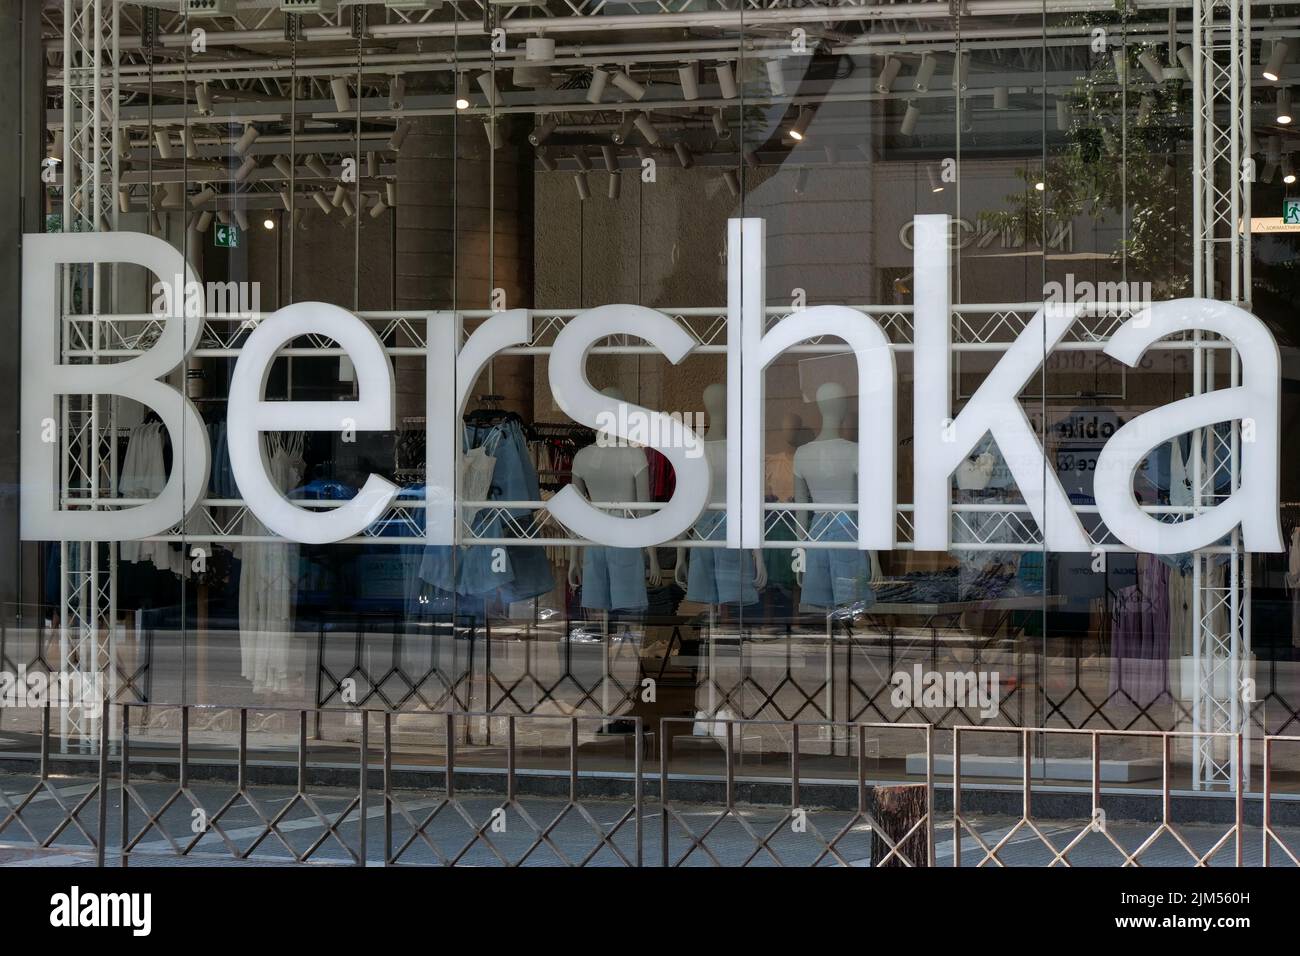 Bershka fashion shop sign, Thessaloniki, Macedonia, Norrh-Eastern Greece Stock Photo